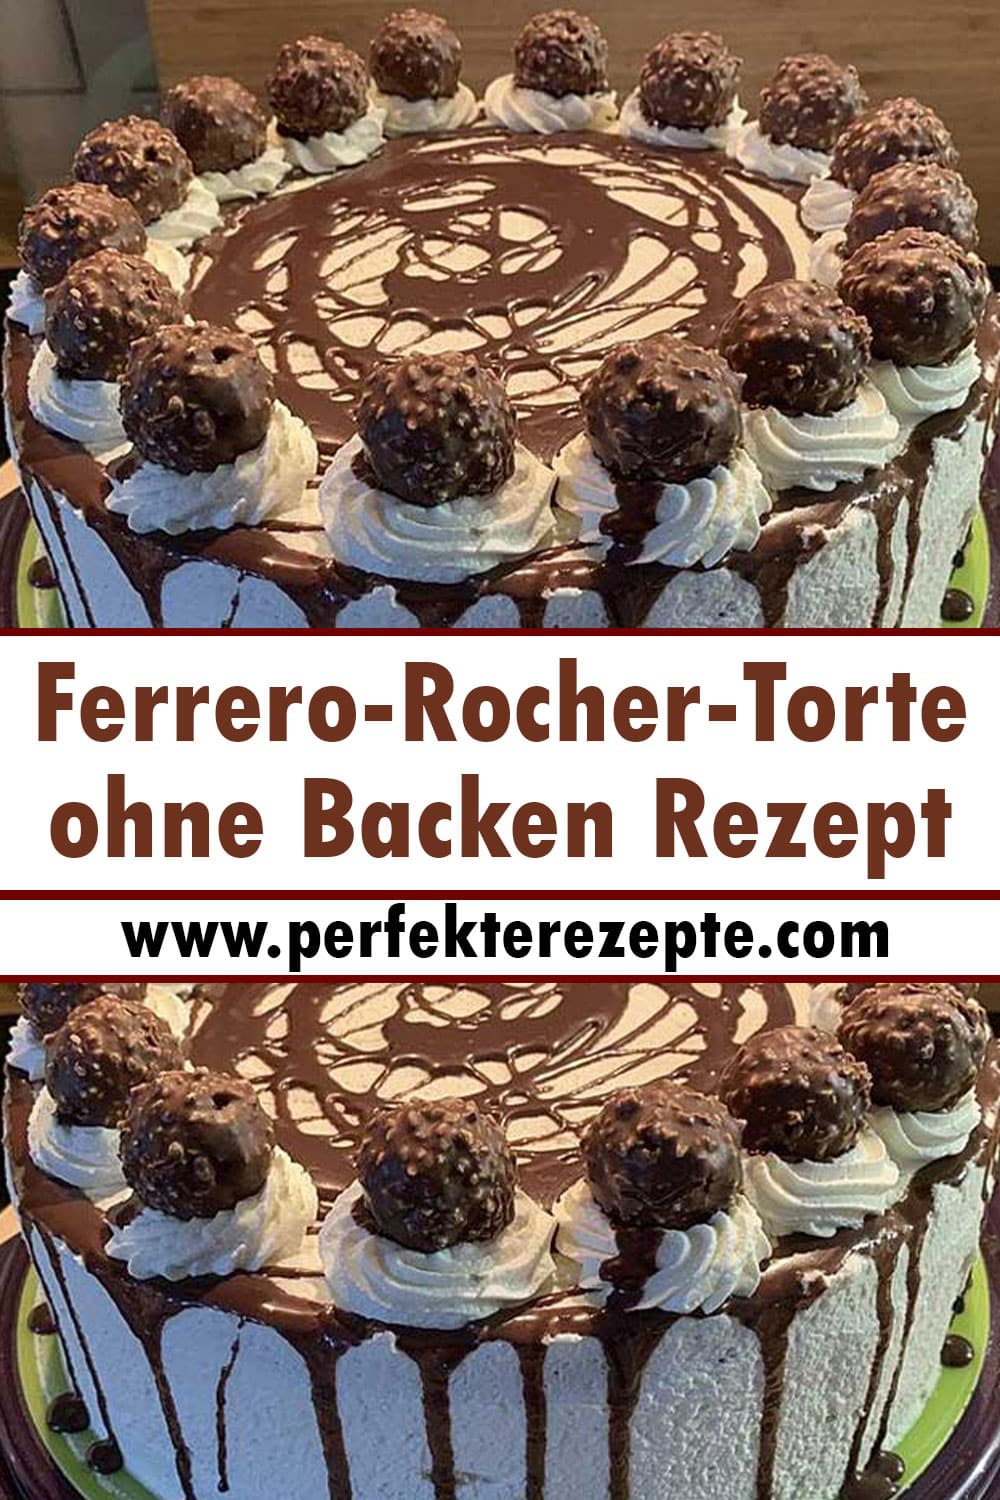 Ferrero-Rocher-Torte ohne Backen Rezept